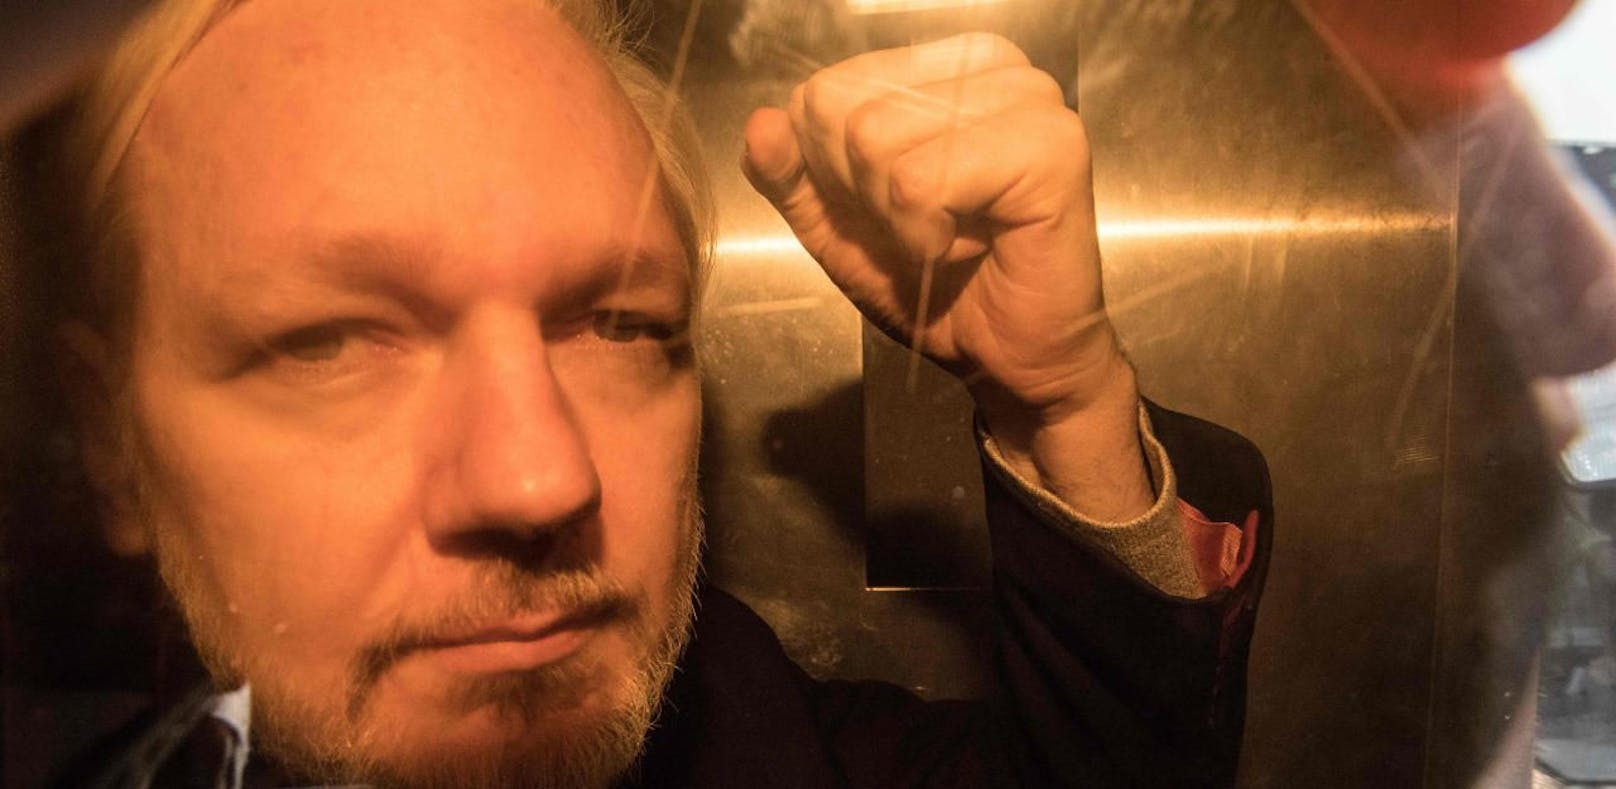 Schweden beantragt Haftbefehl gegen Assange